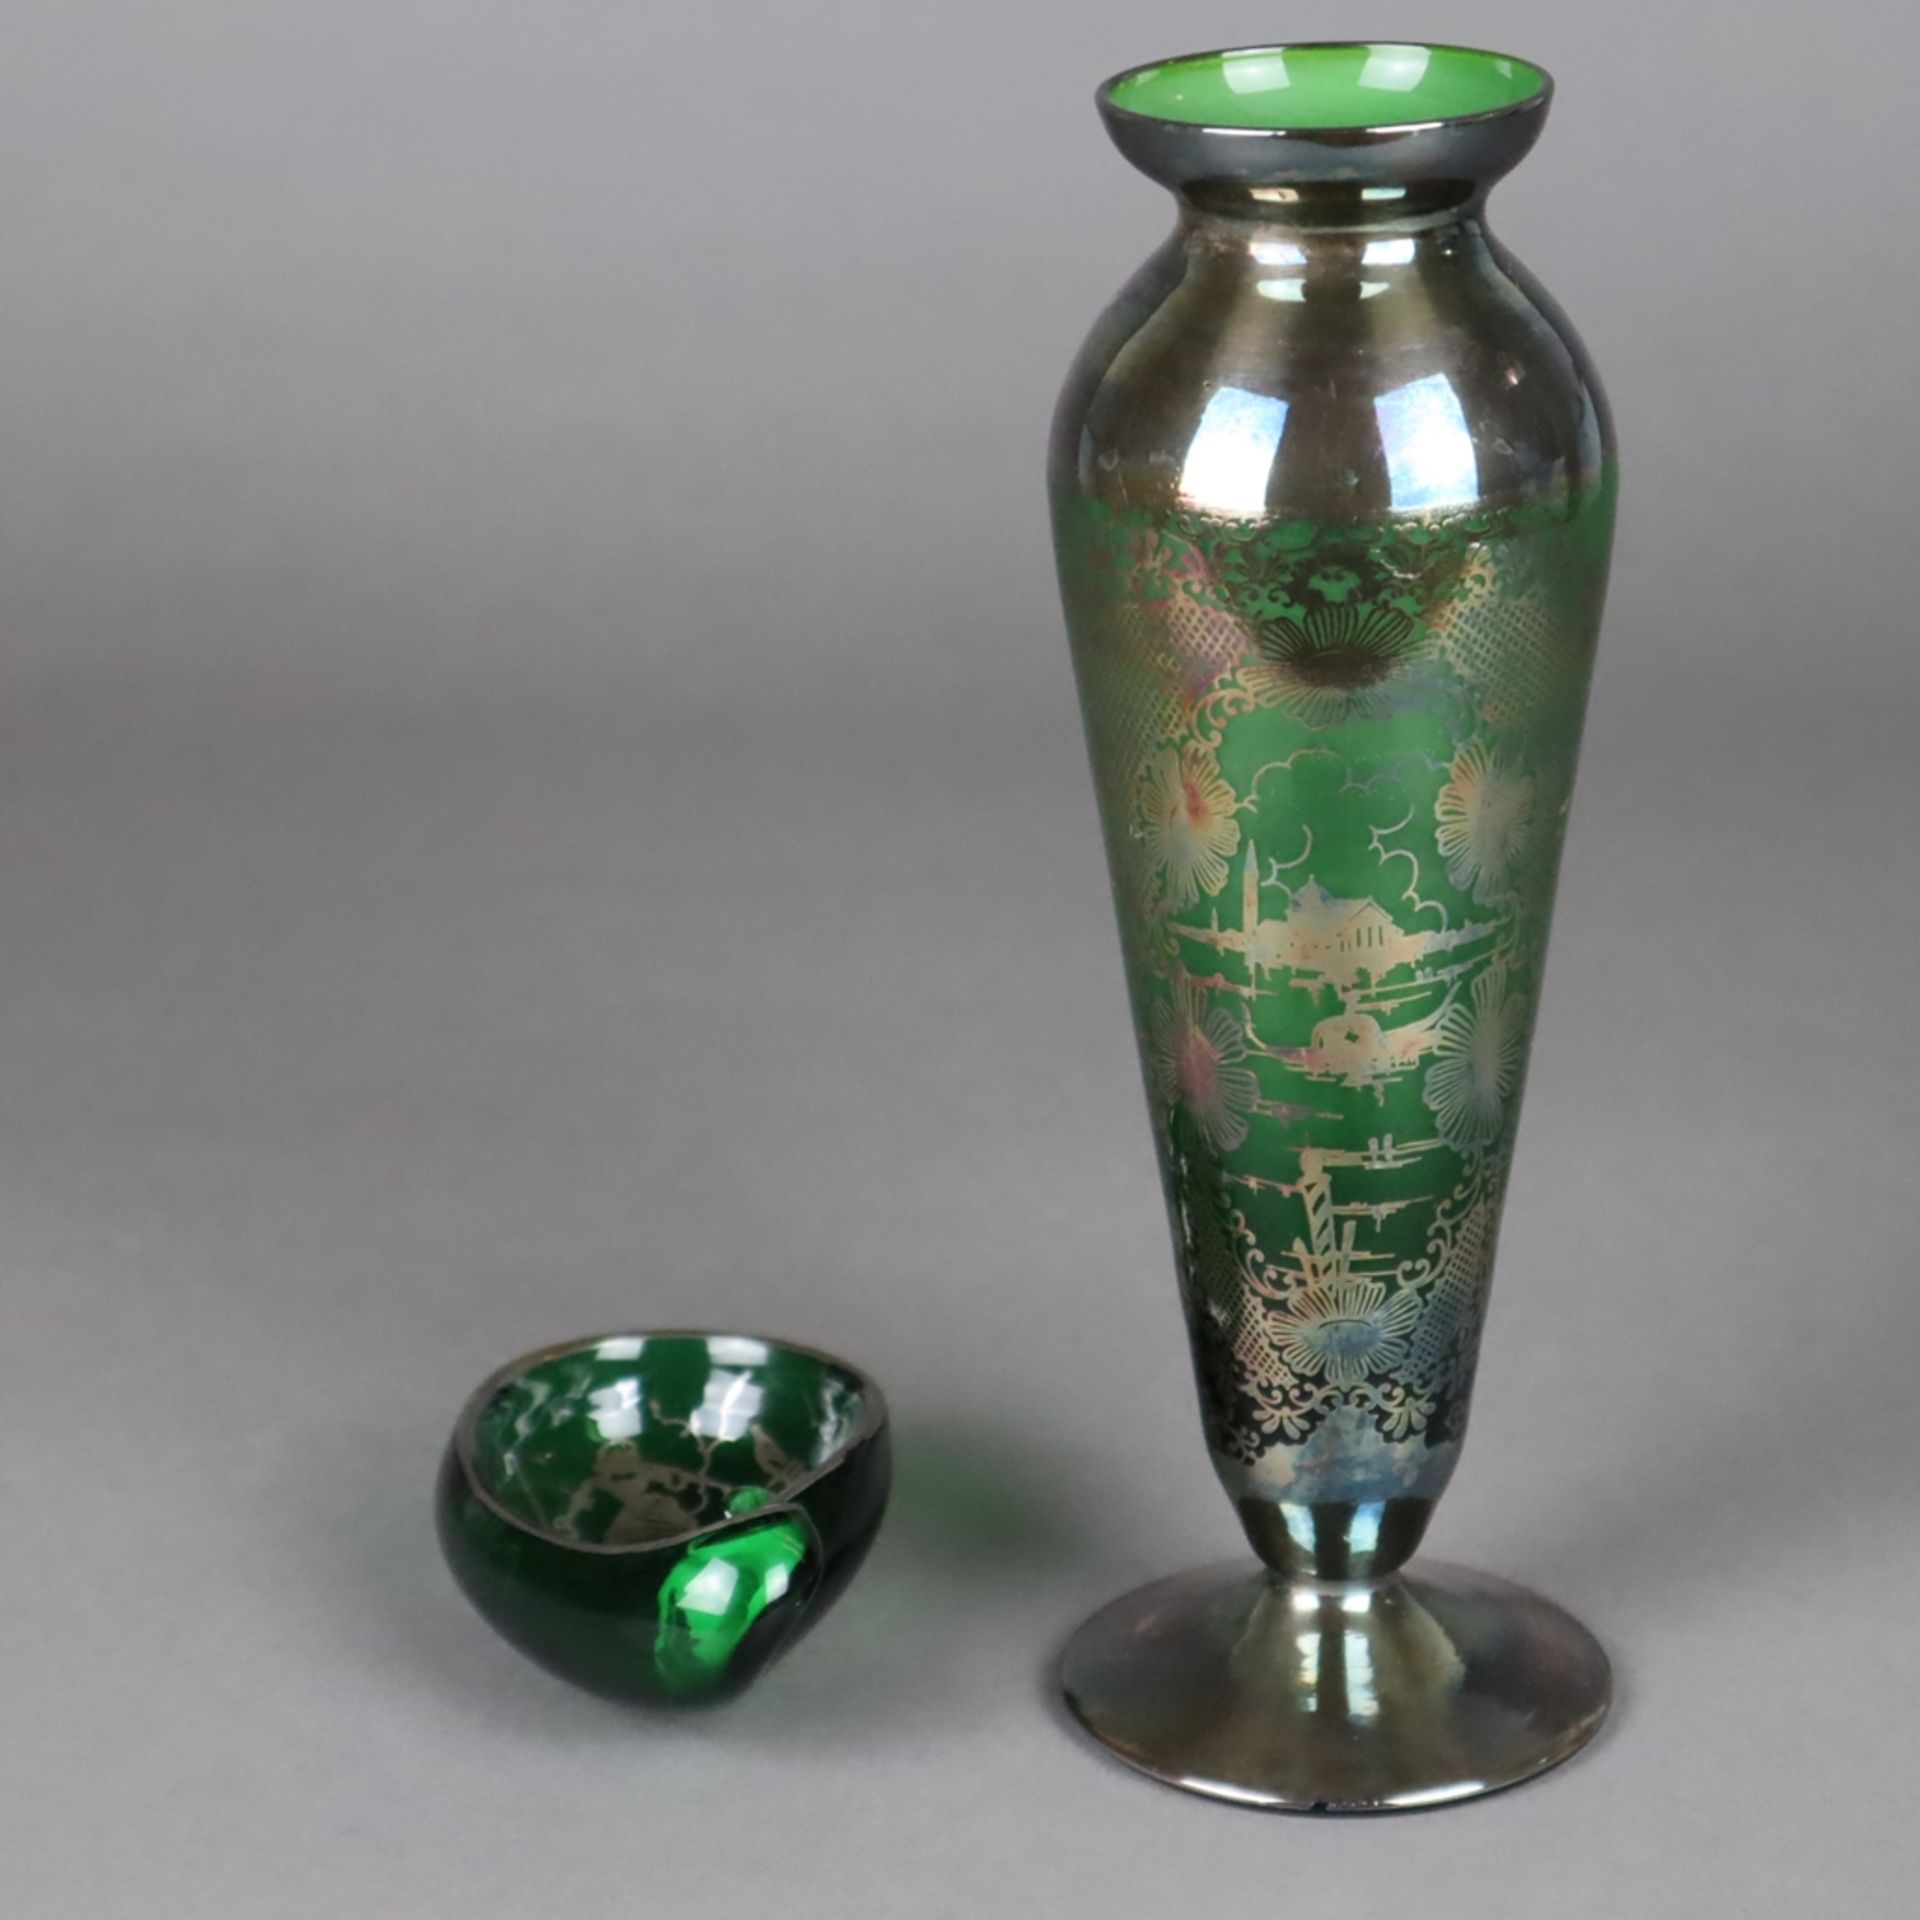 Vase und Ascher mit Silberoverlay - Murano, 1950er Jahre, grünes Glas mit Silbe